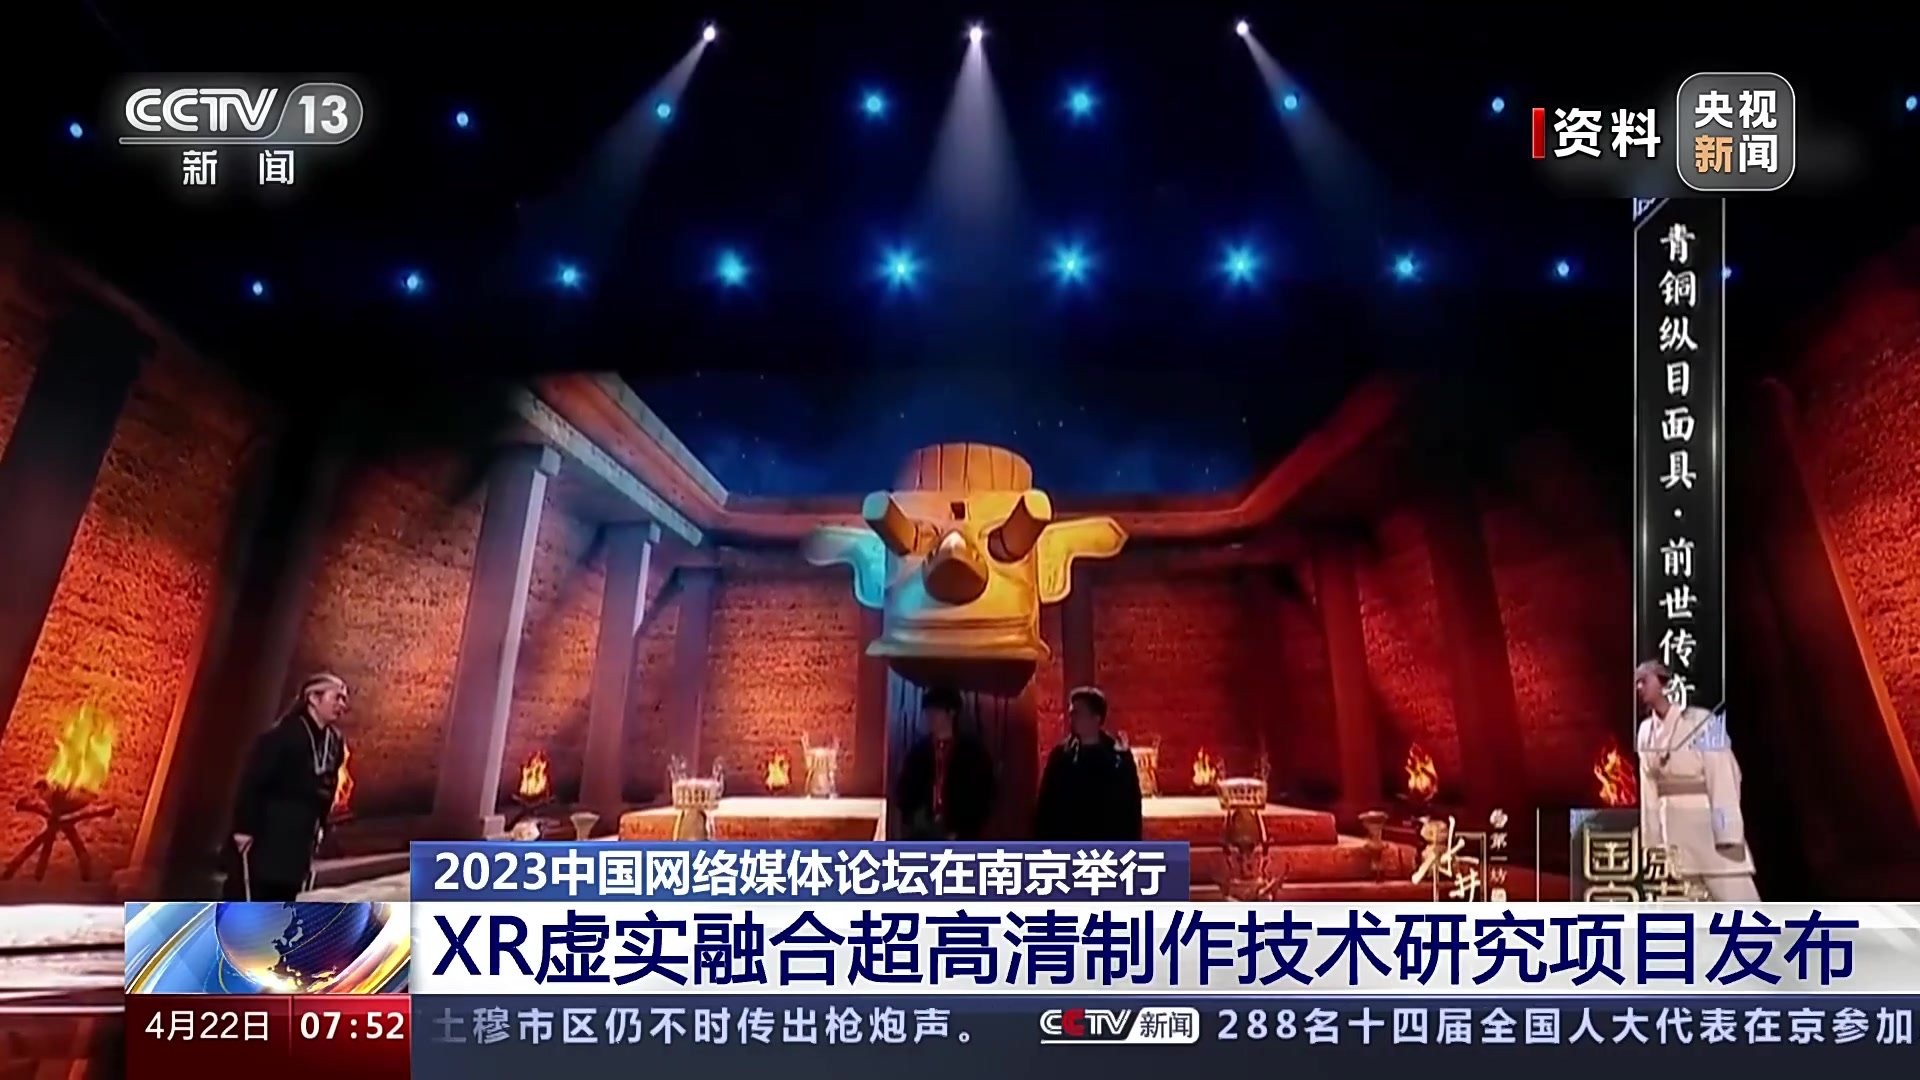 2023中国网络媒体论坛在南京举行 XR虚实融合超高清制作技术研究项目发布